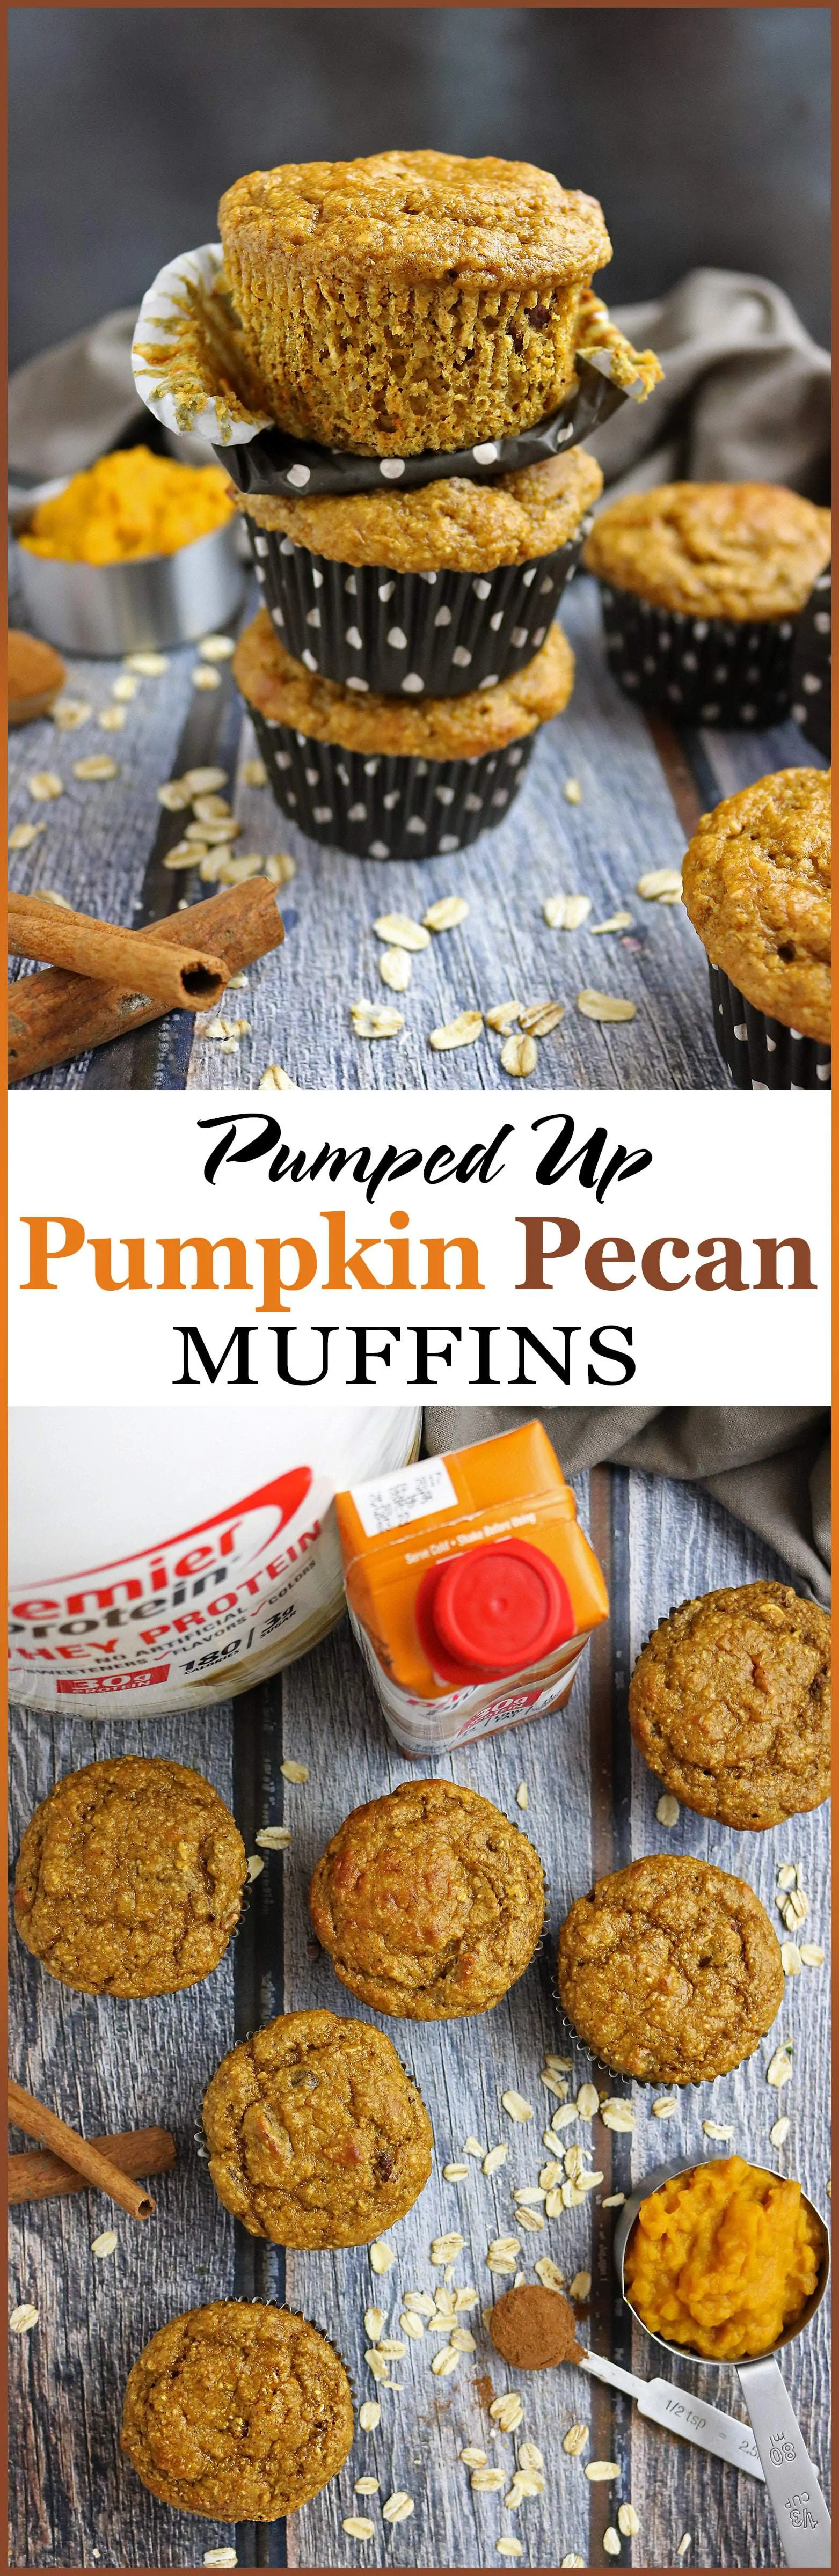 Pumpkin Pecan Muffins With Premier Protein